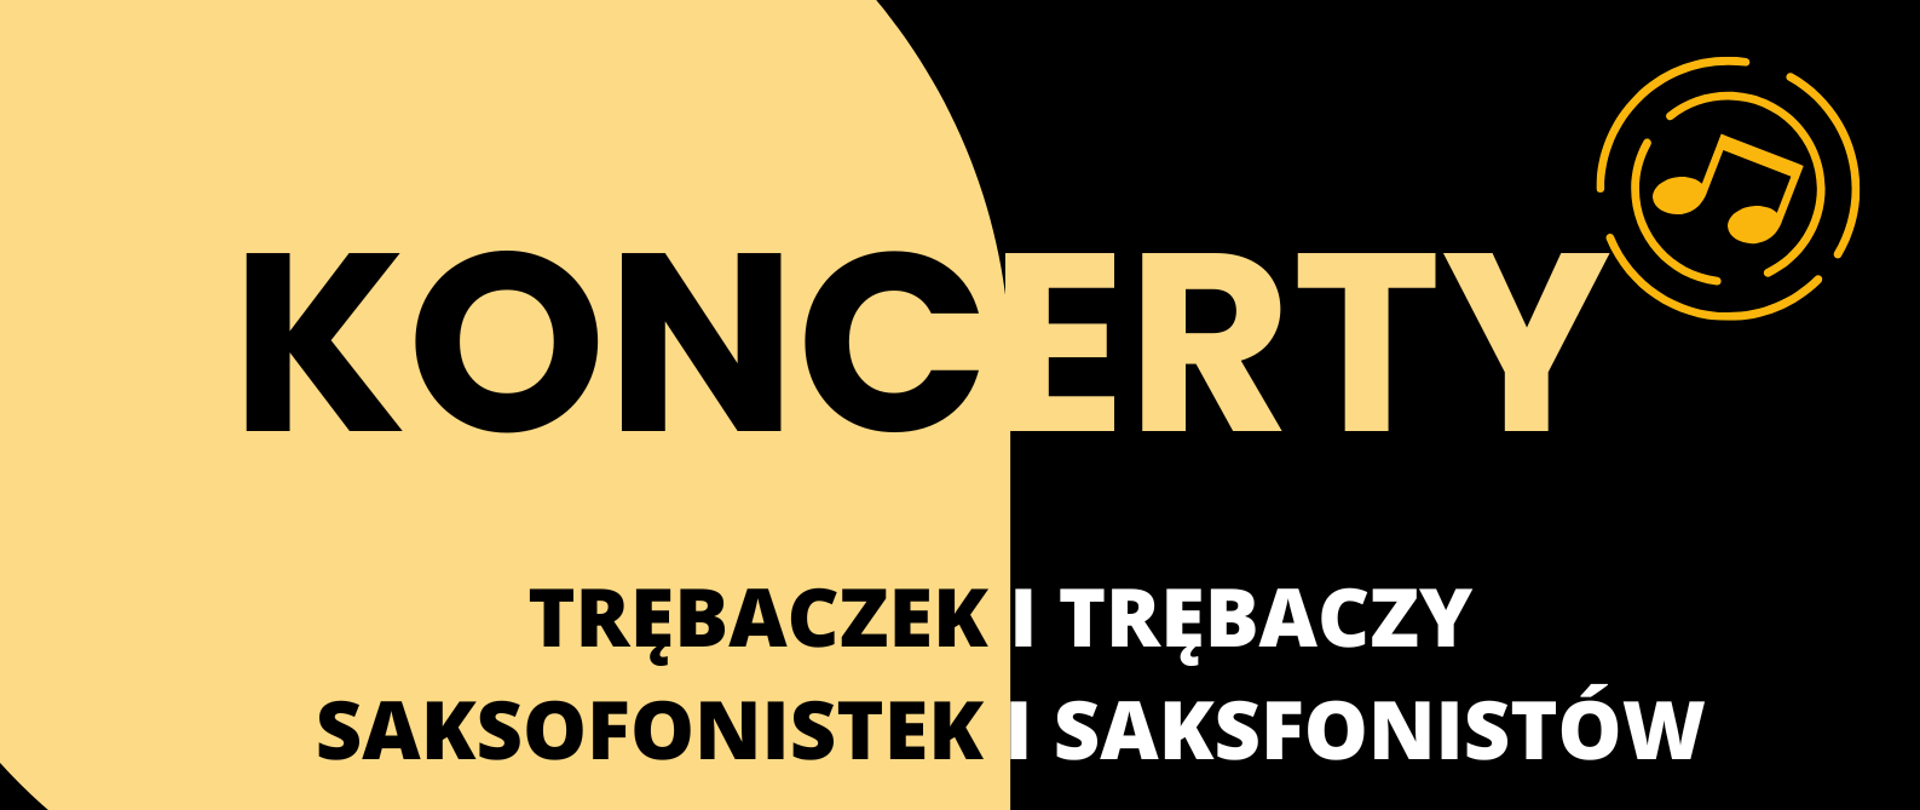 Plakat z informacja o koncertach